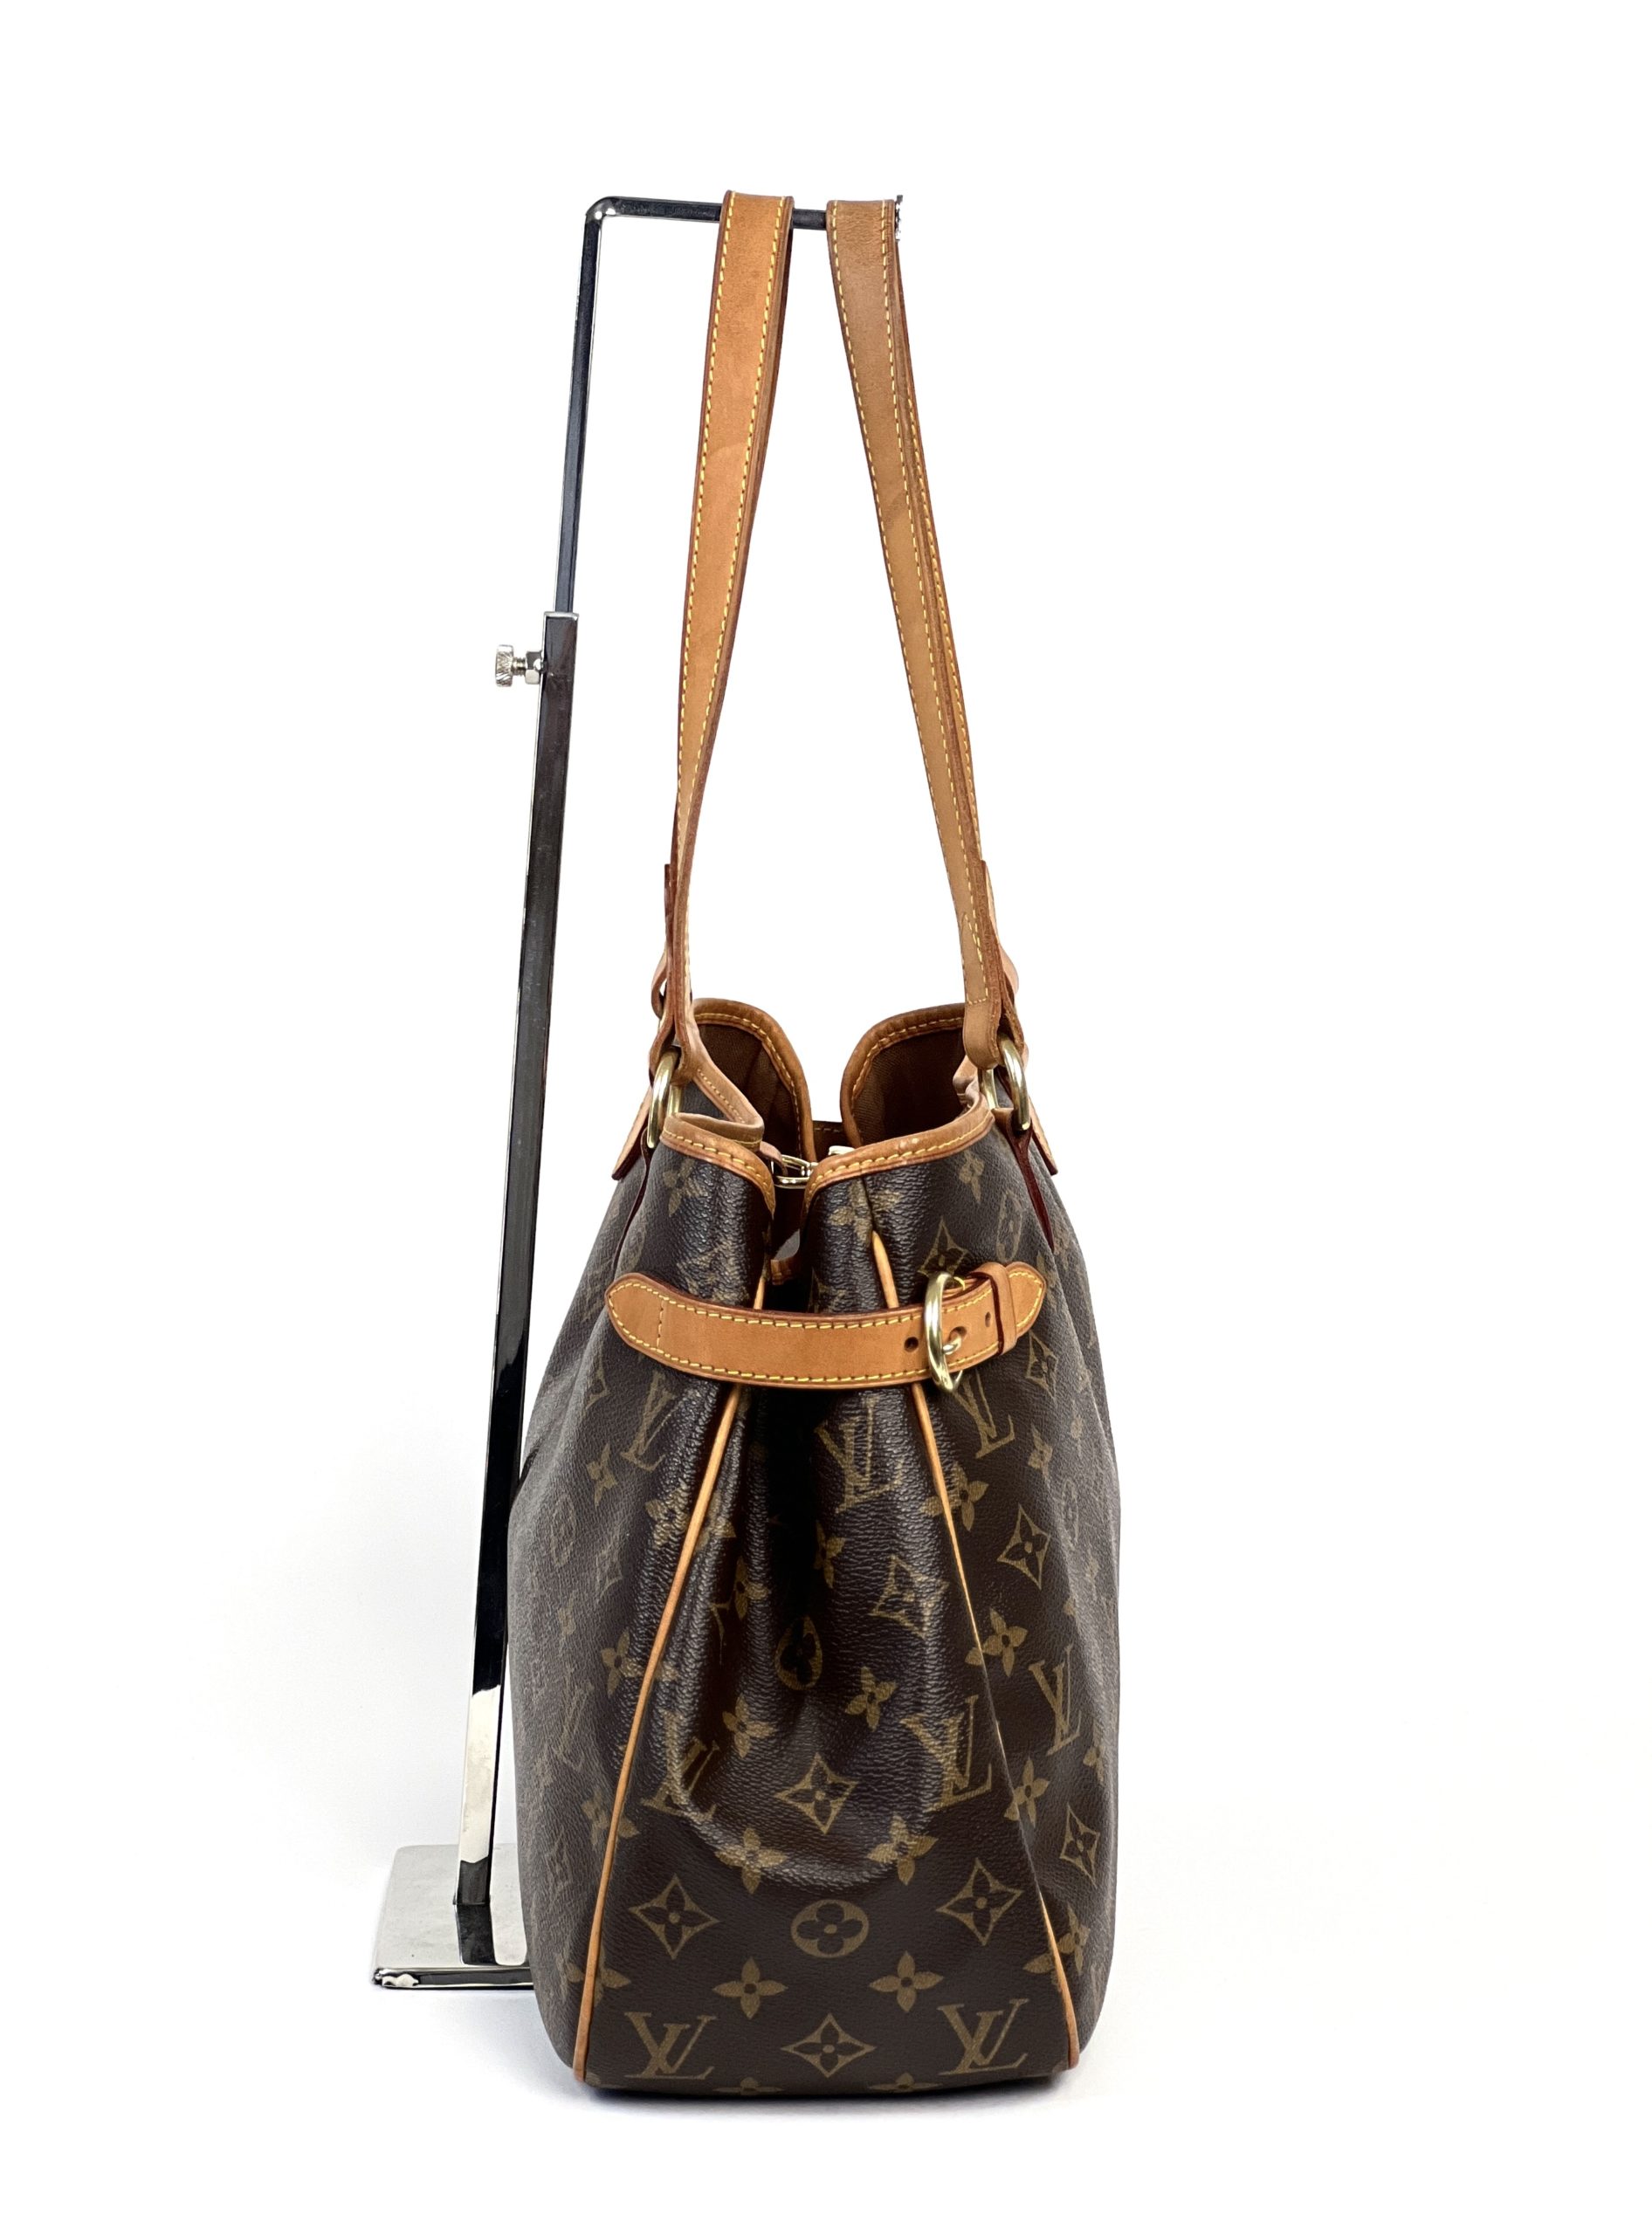 Louis Vuitton Batignolles Vertical bucket handbag authentic used